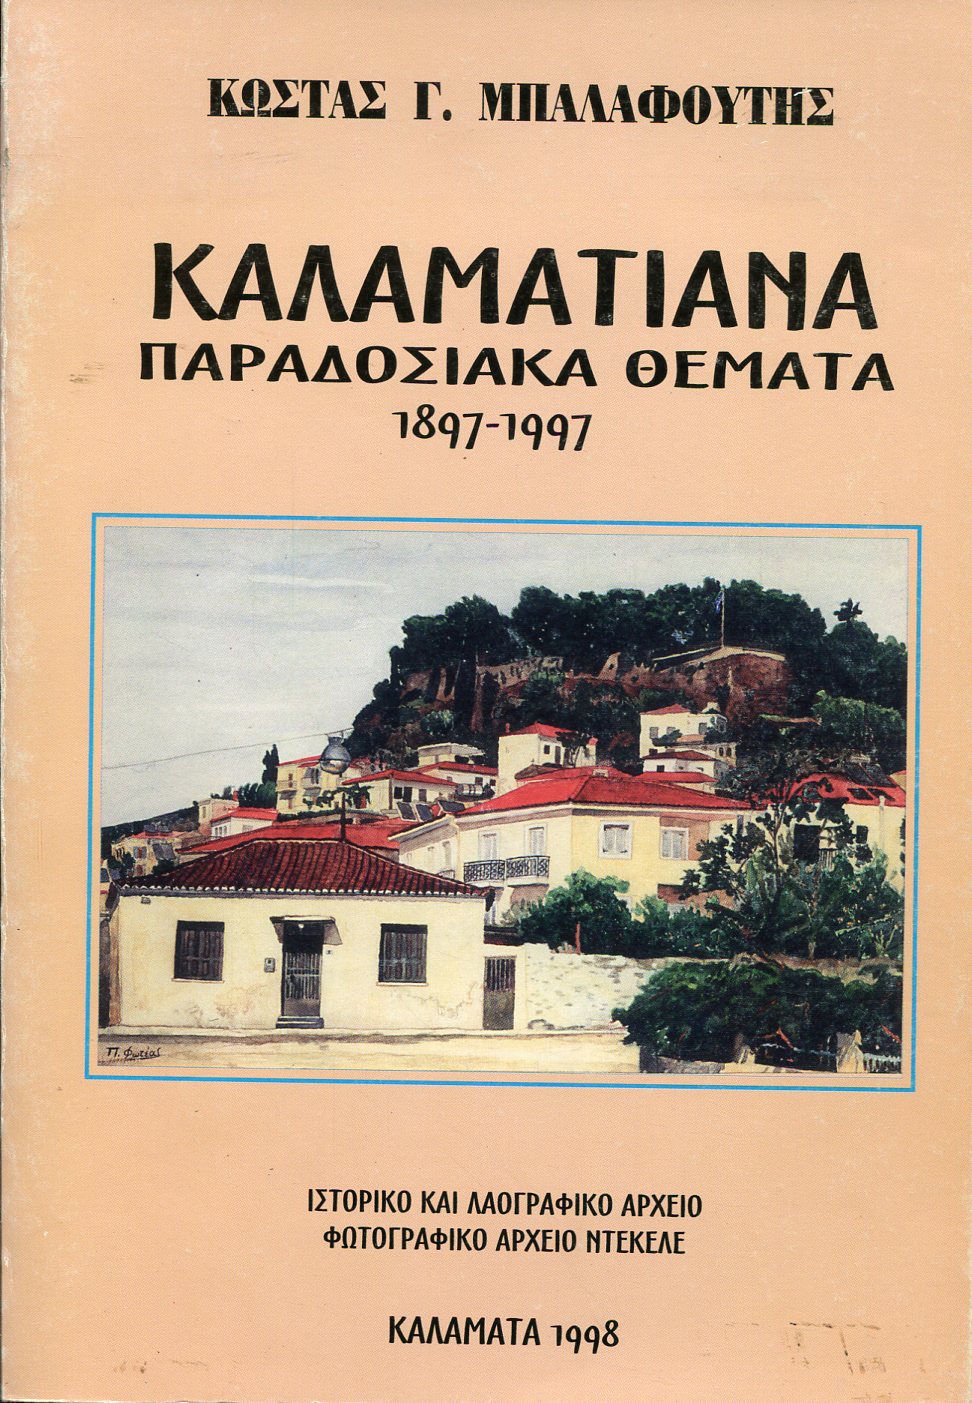 ΚΑΛΑΜΑΤΙΑΝΑ ΠΑΡΑΔΟΣΙΑΚΑ ΘΕΜΑΤΑ 1897-1997